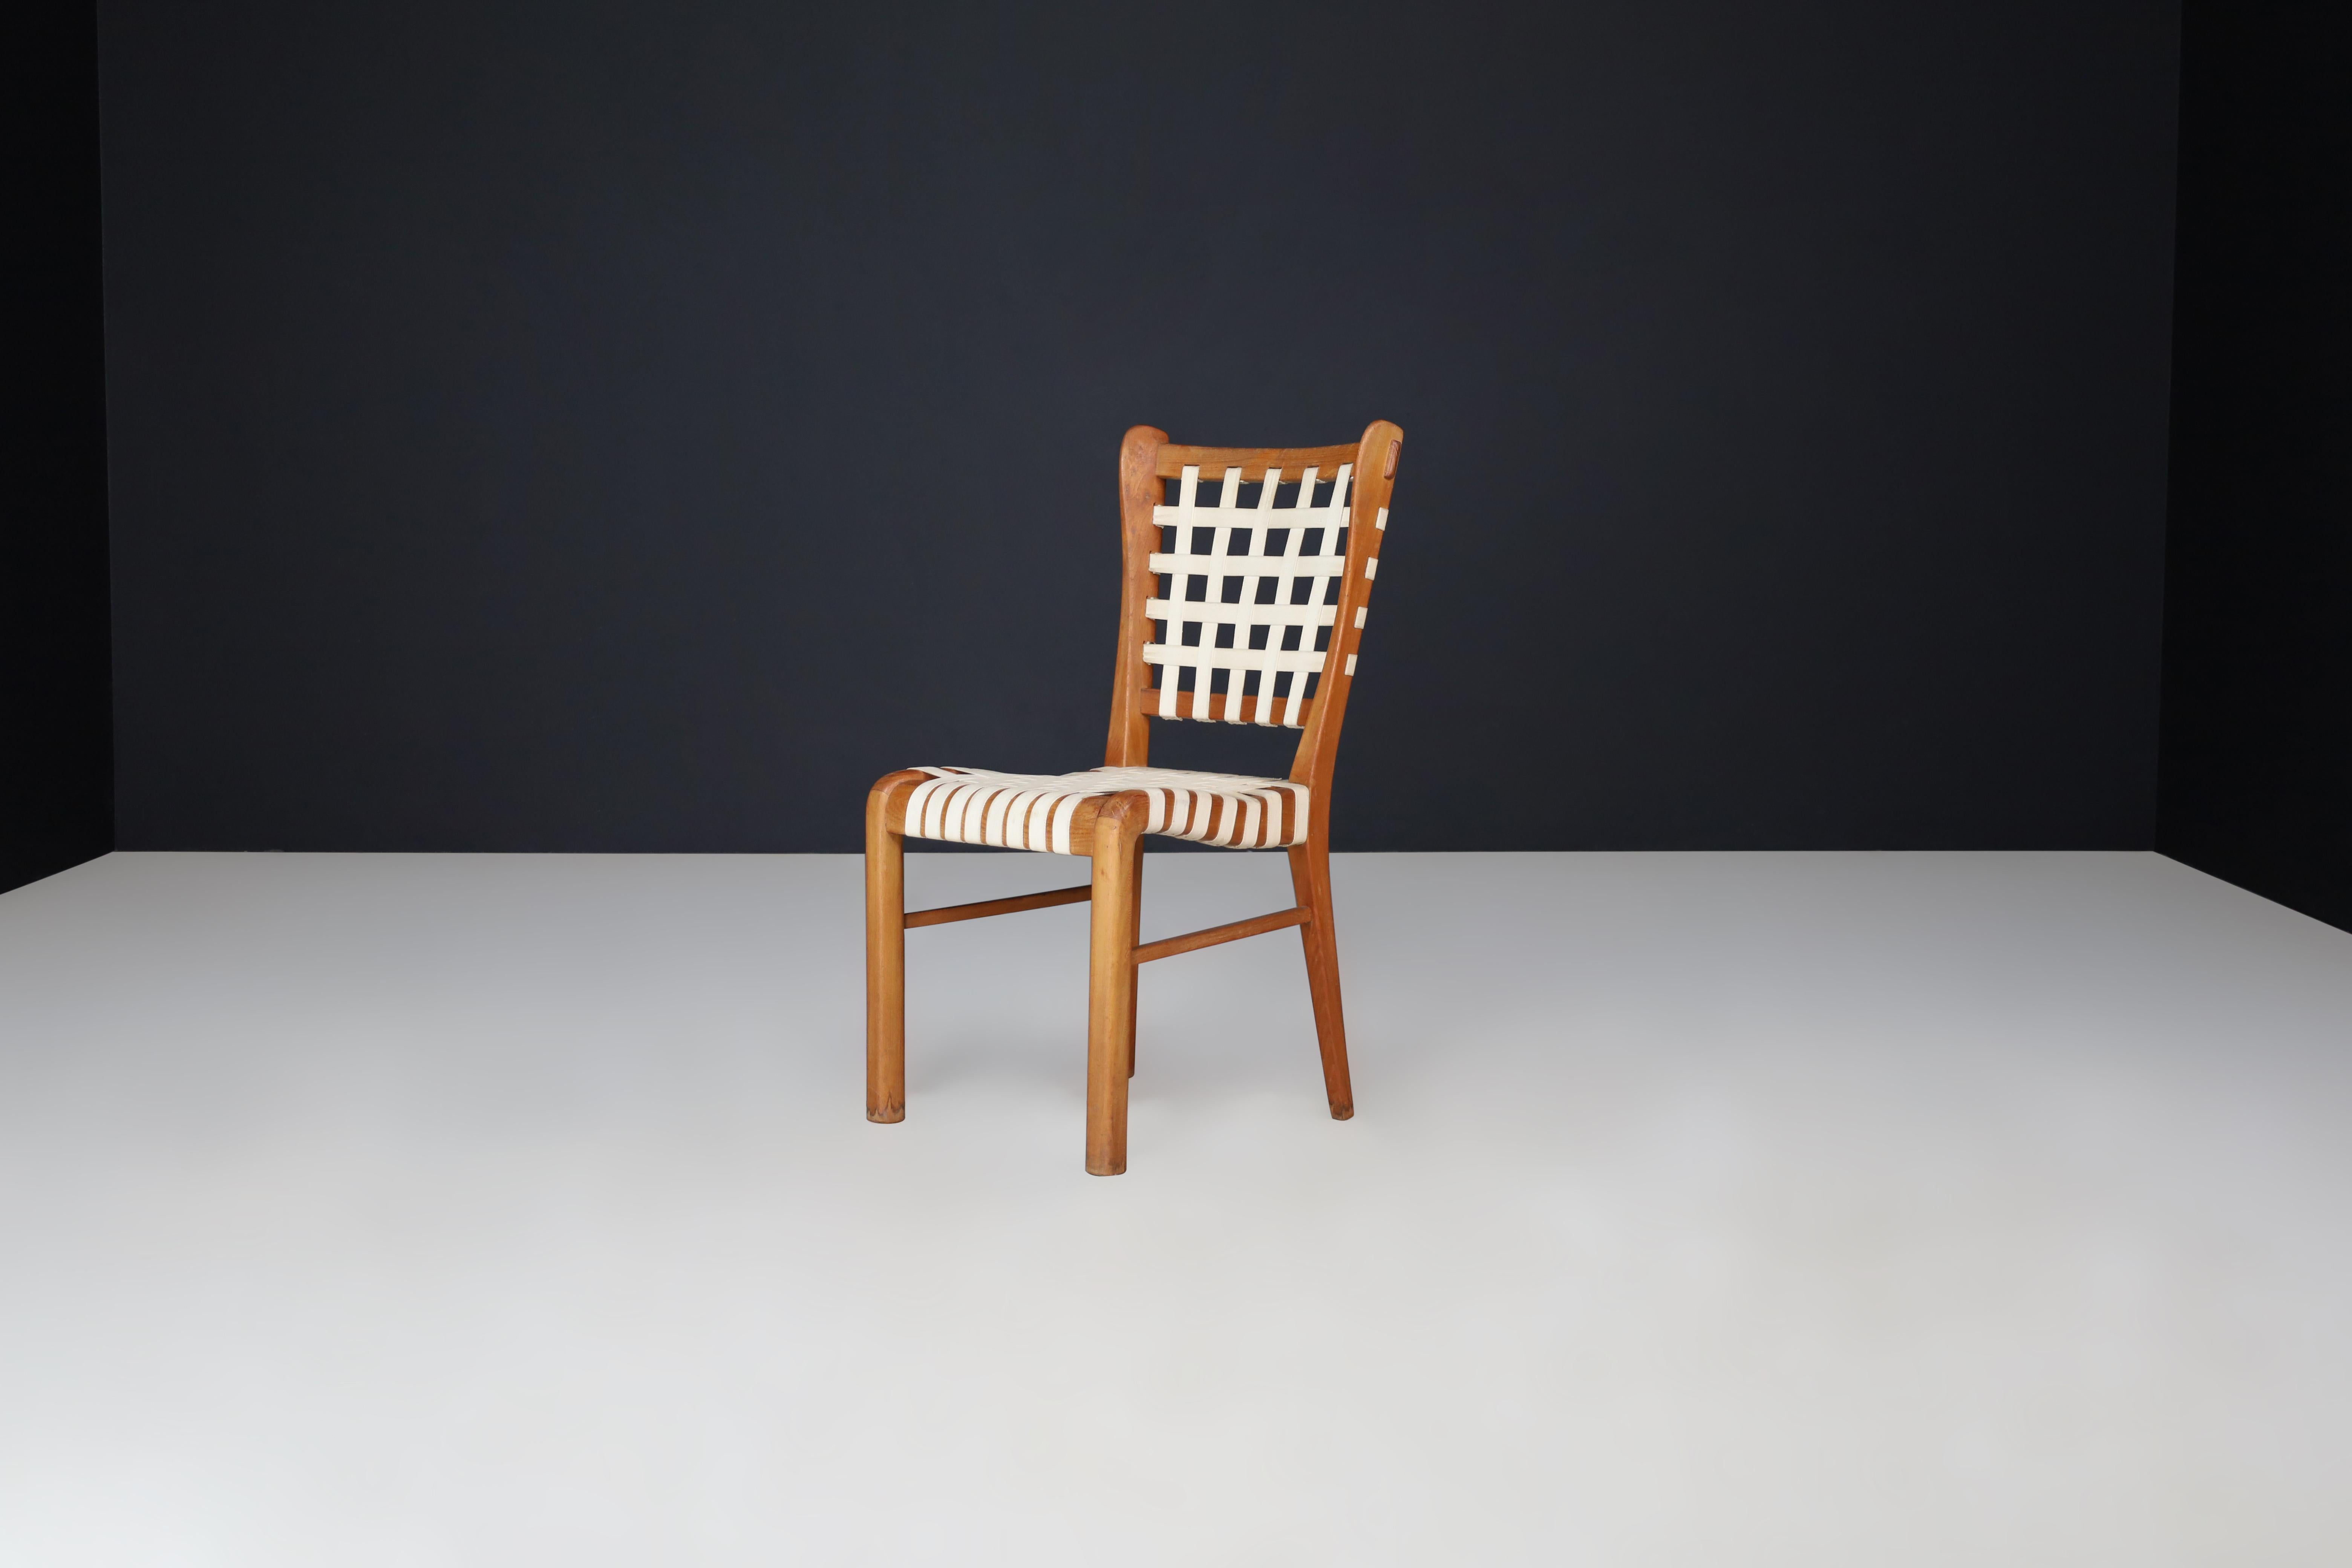 Chaise d'appoint sculpturale en chêne par Guglielmo Pecorini, Italie, années 1950

Il s'agit d'une chaise sculpturale du milieu du siècle, conçue par Guglielmo Pecorini dans les années 1950. La chaise est composée d'un cadre en chêne et de sangles